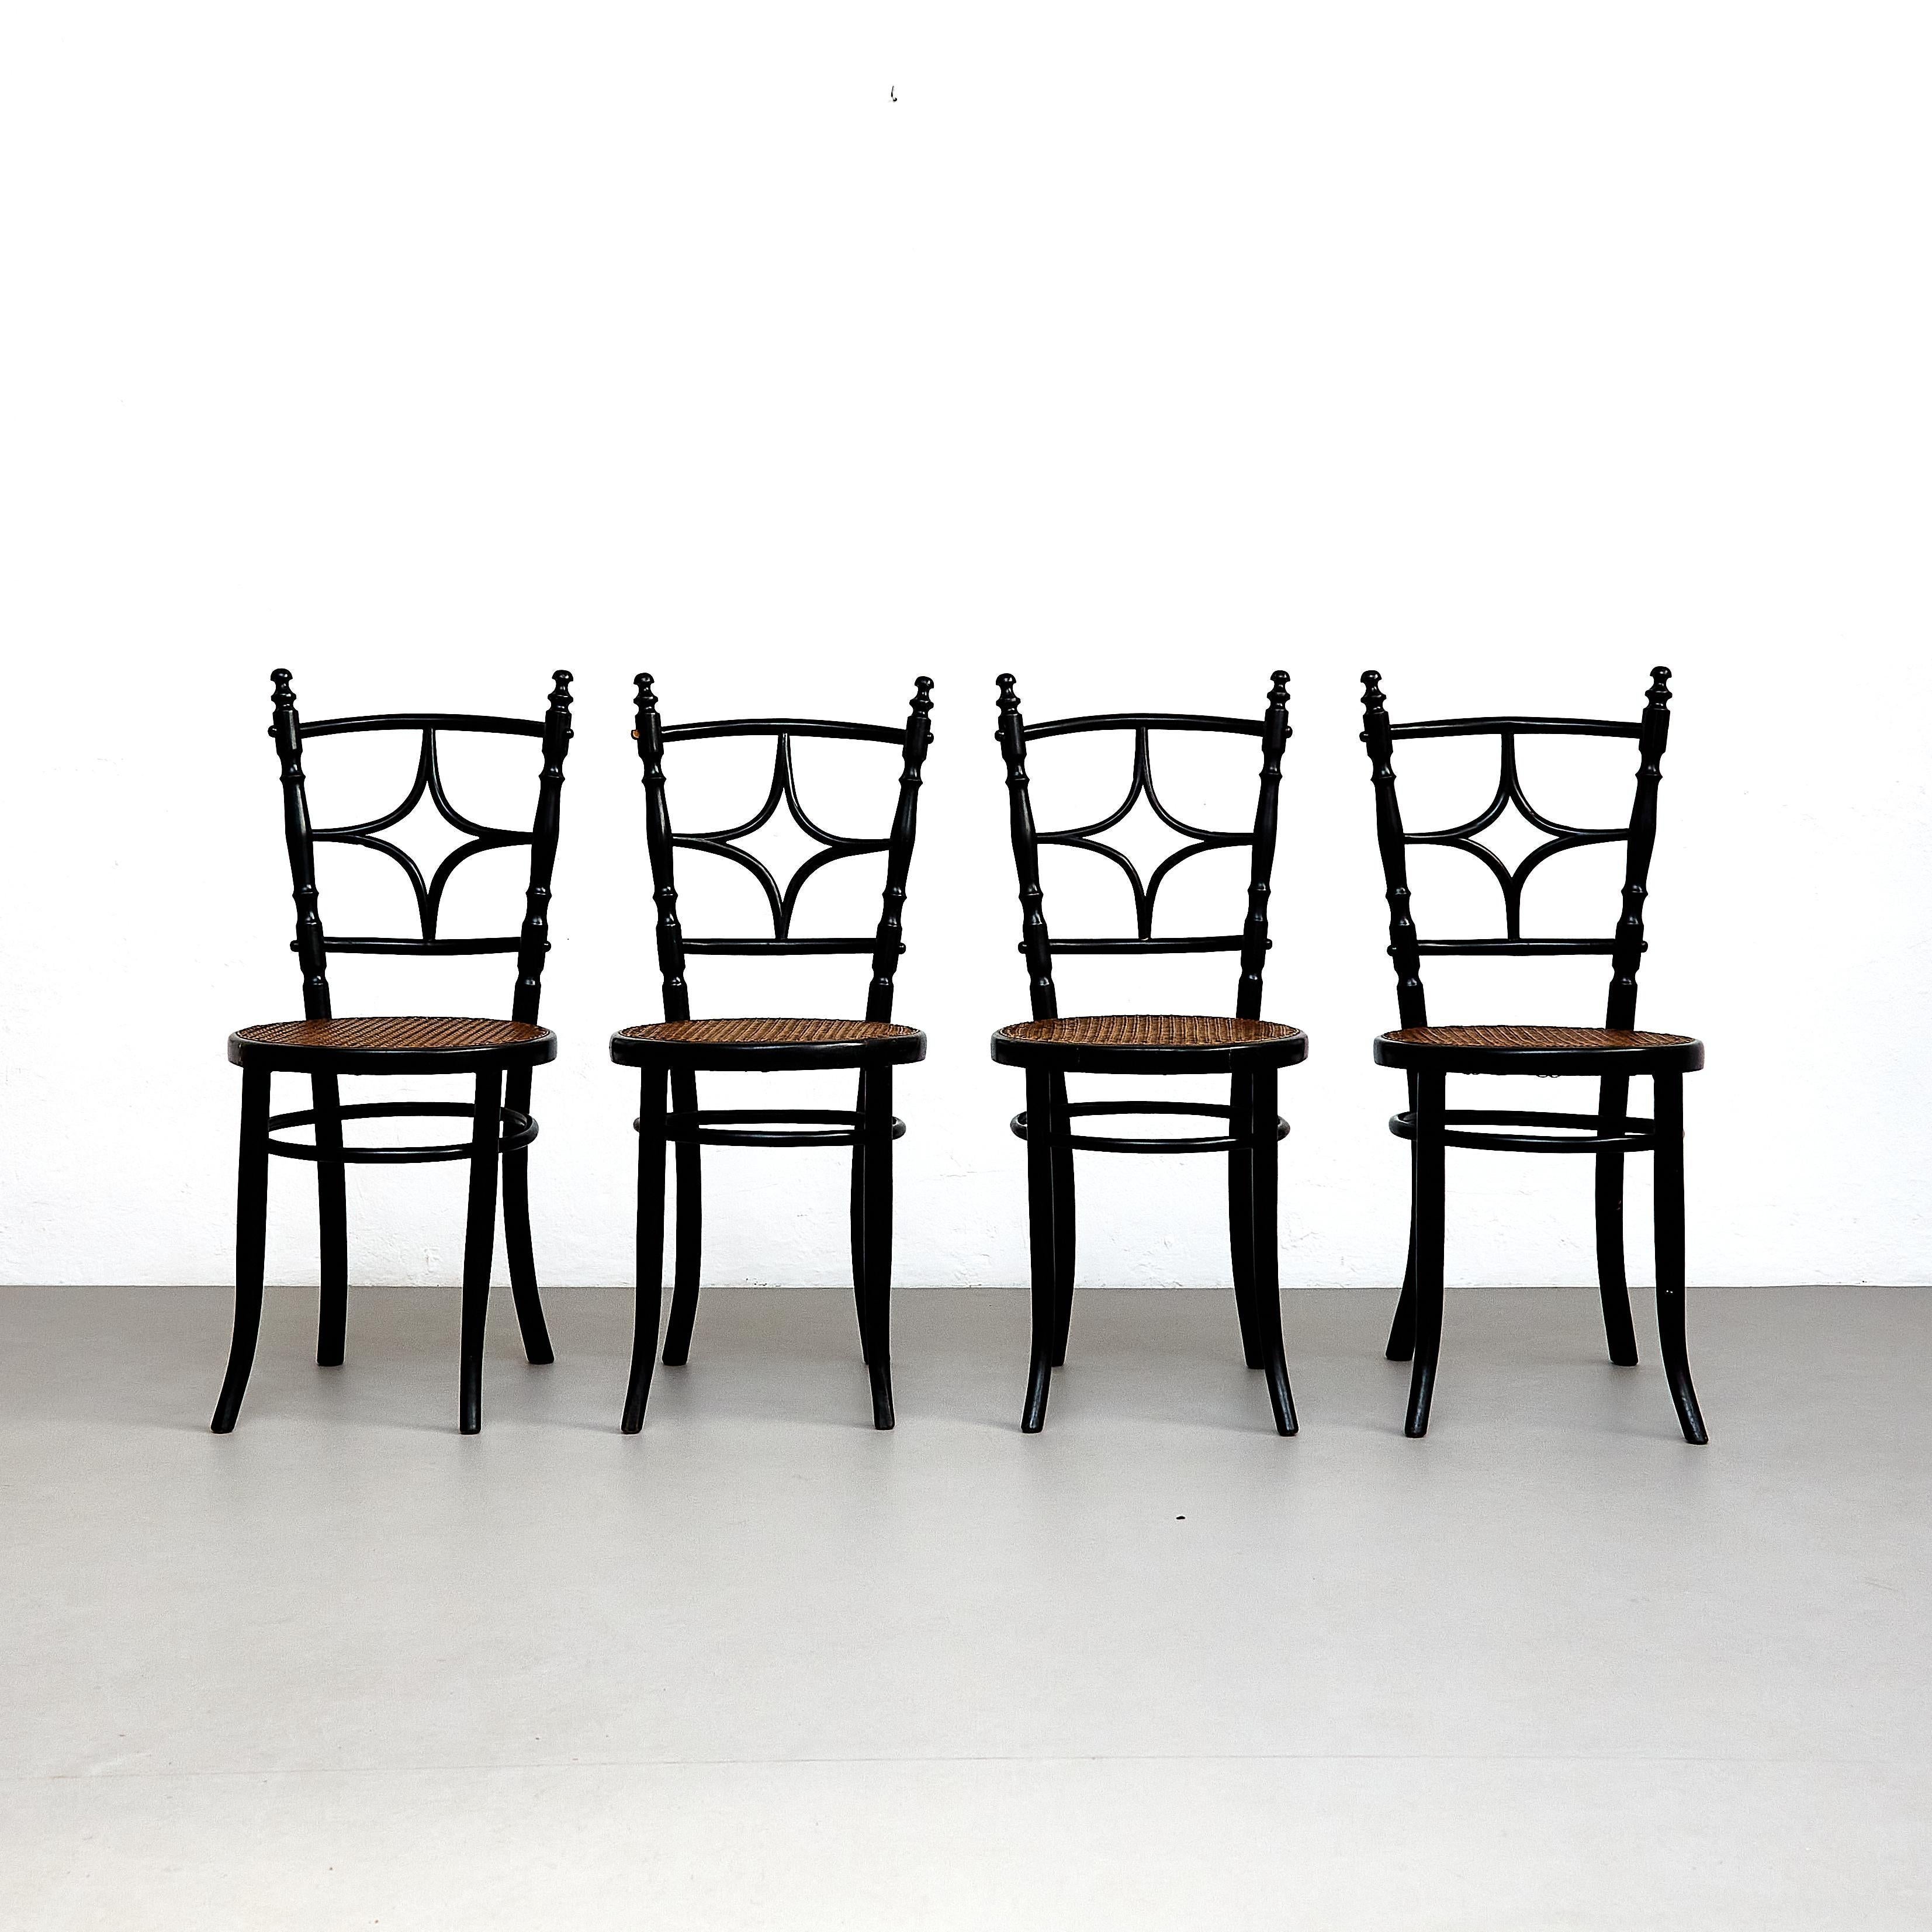 Satz von vier rustikalen französischen Holzstühlen.

Hergestellt in Frankreich, um 1950.

In ursprünglichem Zustand mit geringen Gebrauchsspuren, die dem Alter und dem Gebrauch entsprechen, wobei eine schöne Patina erhalten bleibt.

MATERIALIEN: